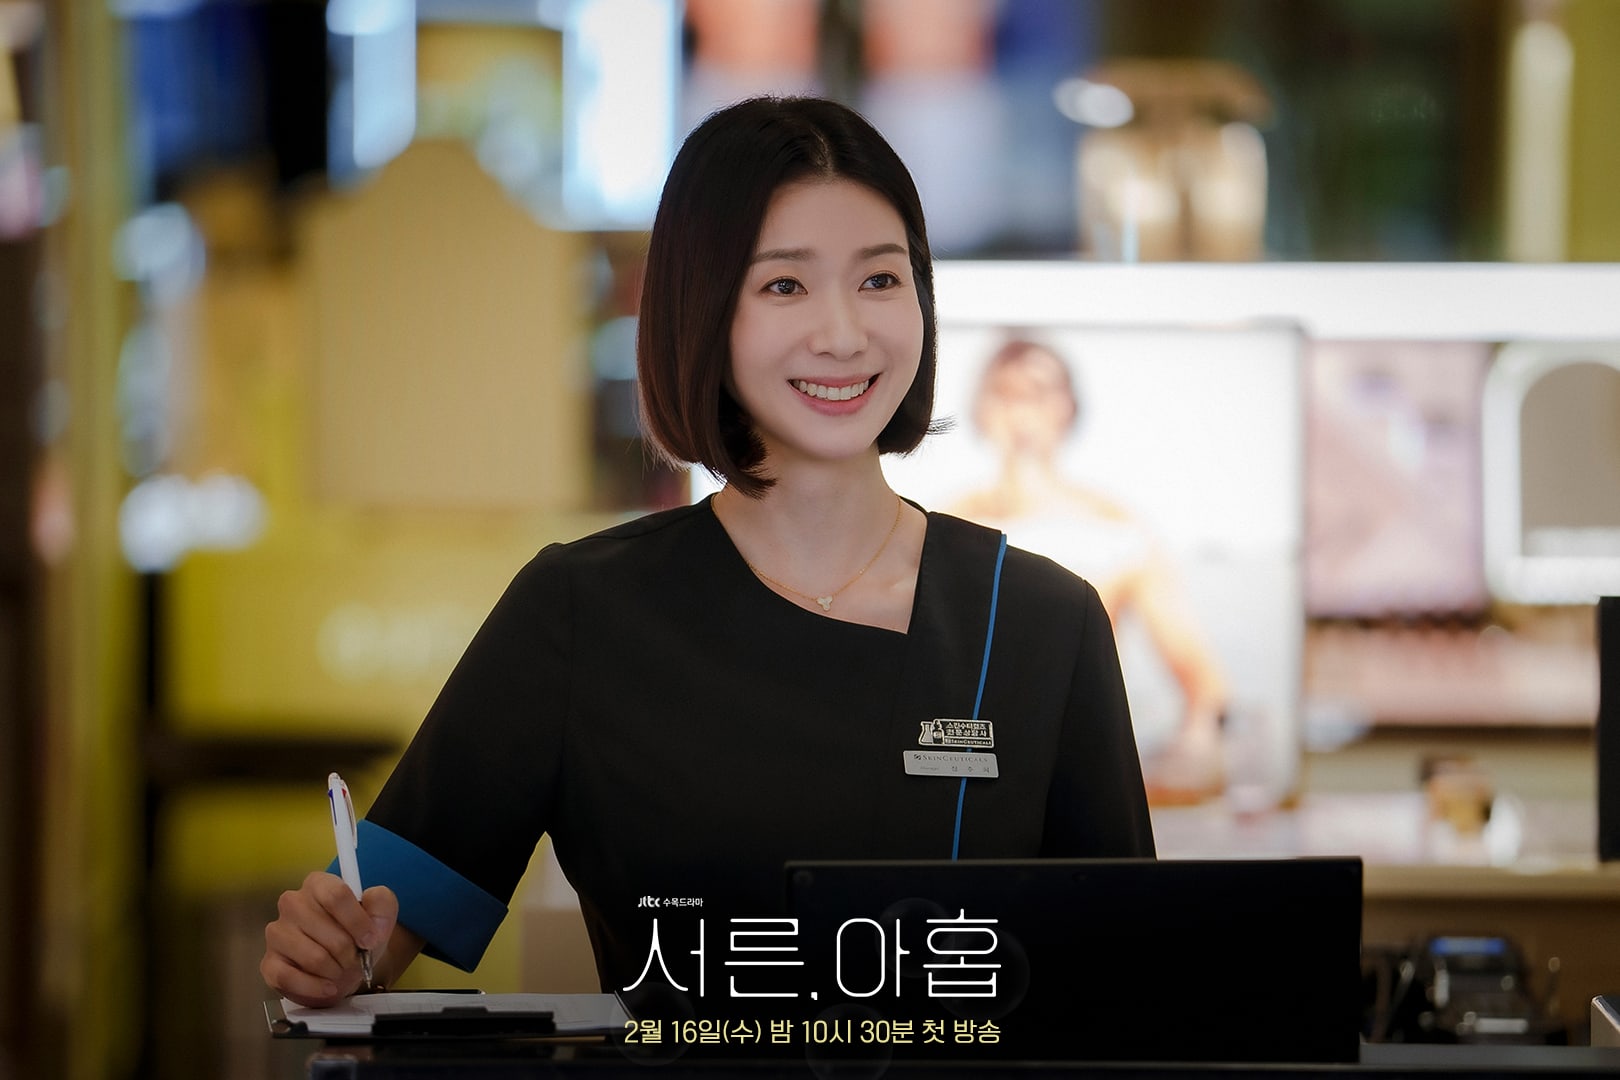 phim 39 Kim Ji Hyun vai Jang Joo Hee 01 - 39: Phim tâm lý về cuộc đời người phụ nữ trước ngưỡng tuổi 40